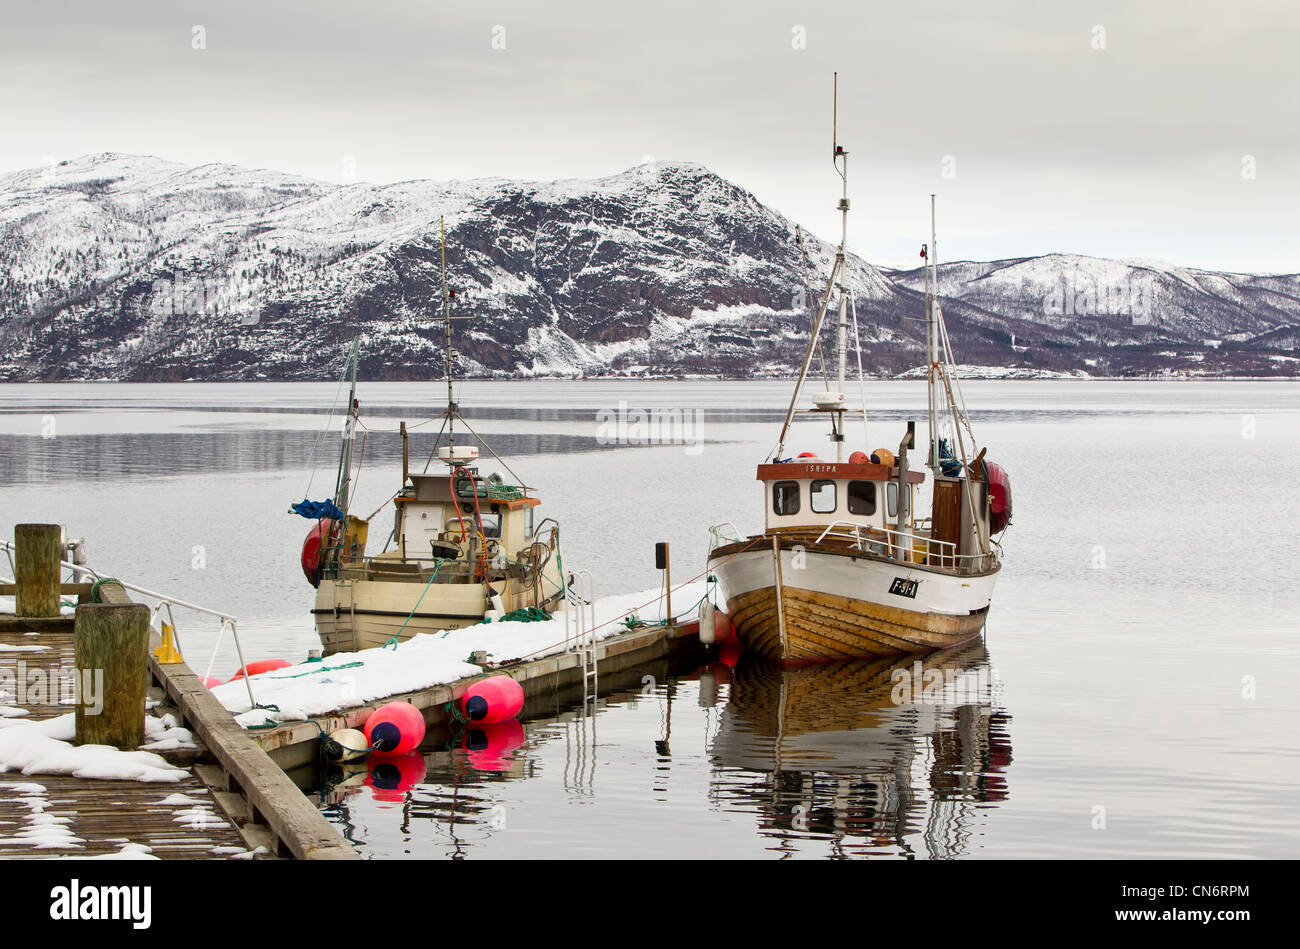 2 barche legata a un molo su un fiordo con montagne innevate dietro presi in formato orizzontale Foto Stock